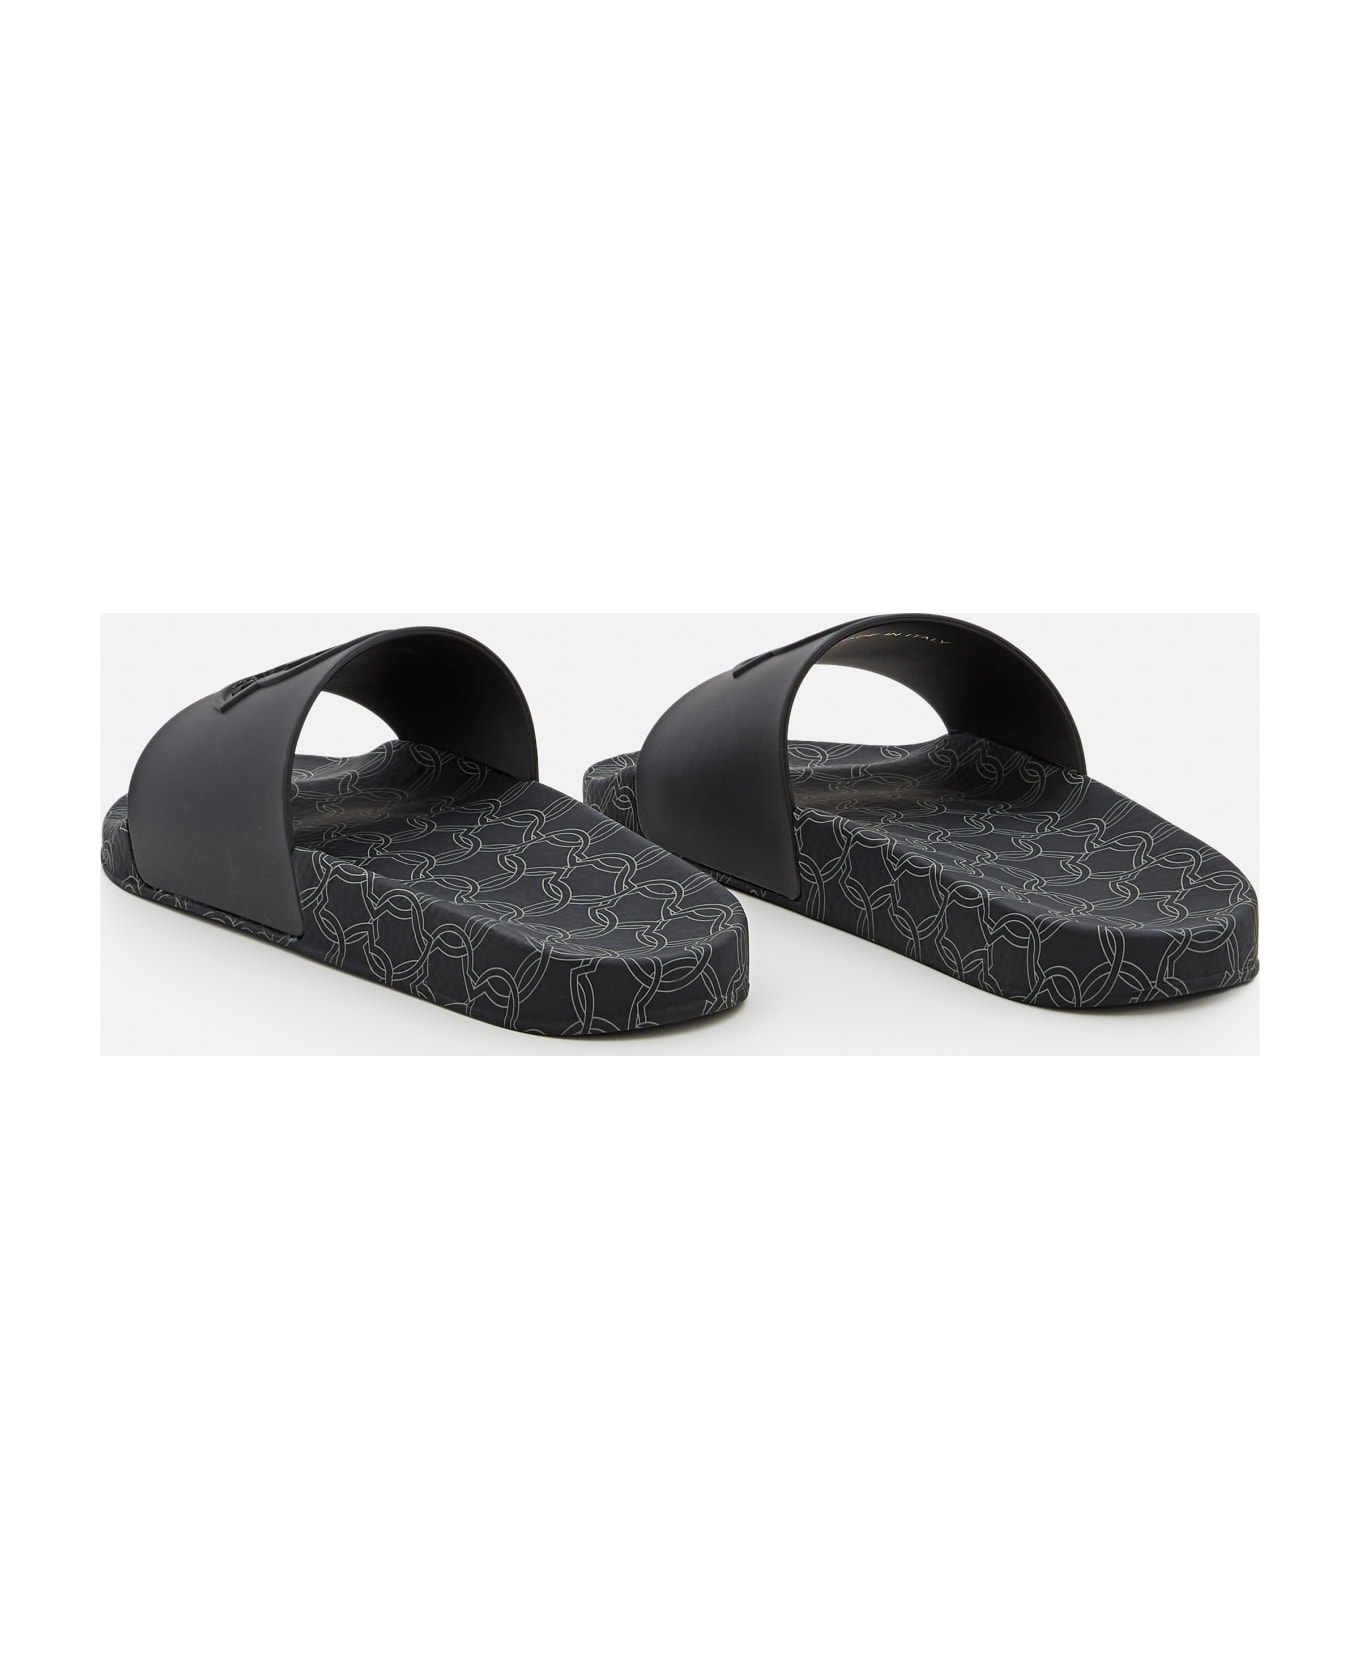 Moncler Jeanne Slides Shoes - Black